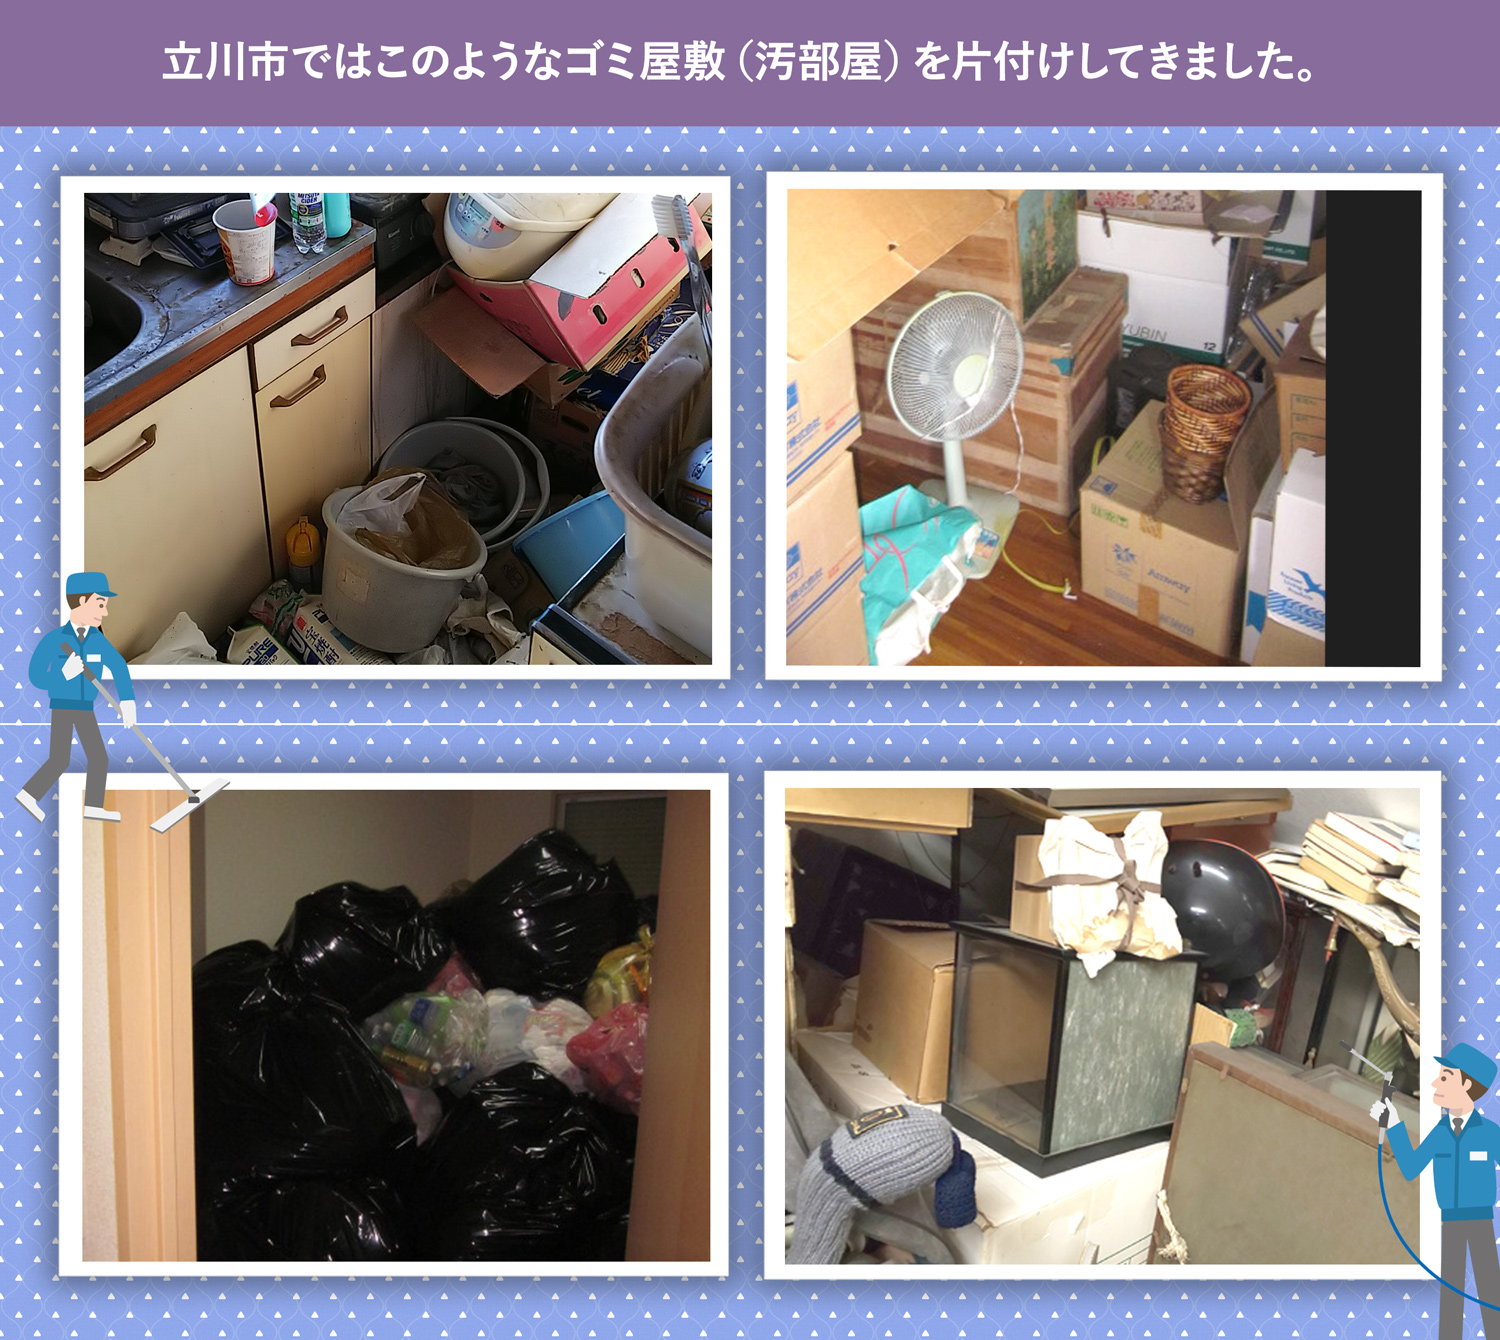 立川市で行ったで行ったごみ屋敷・汚部屋の片付けの一例